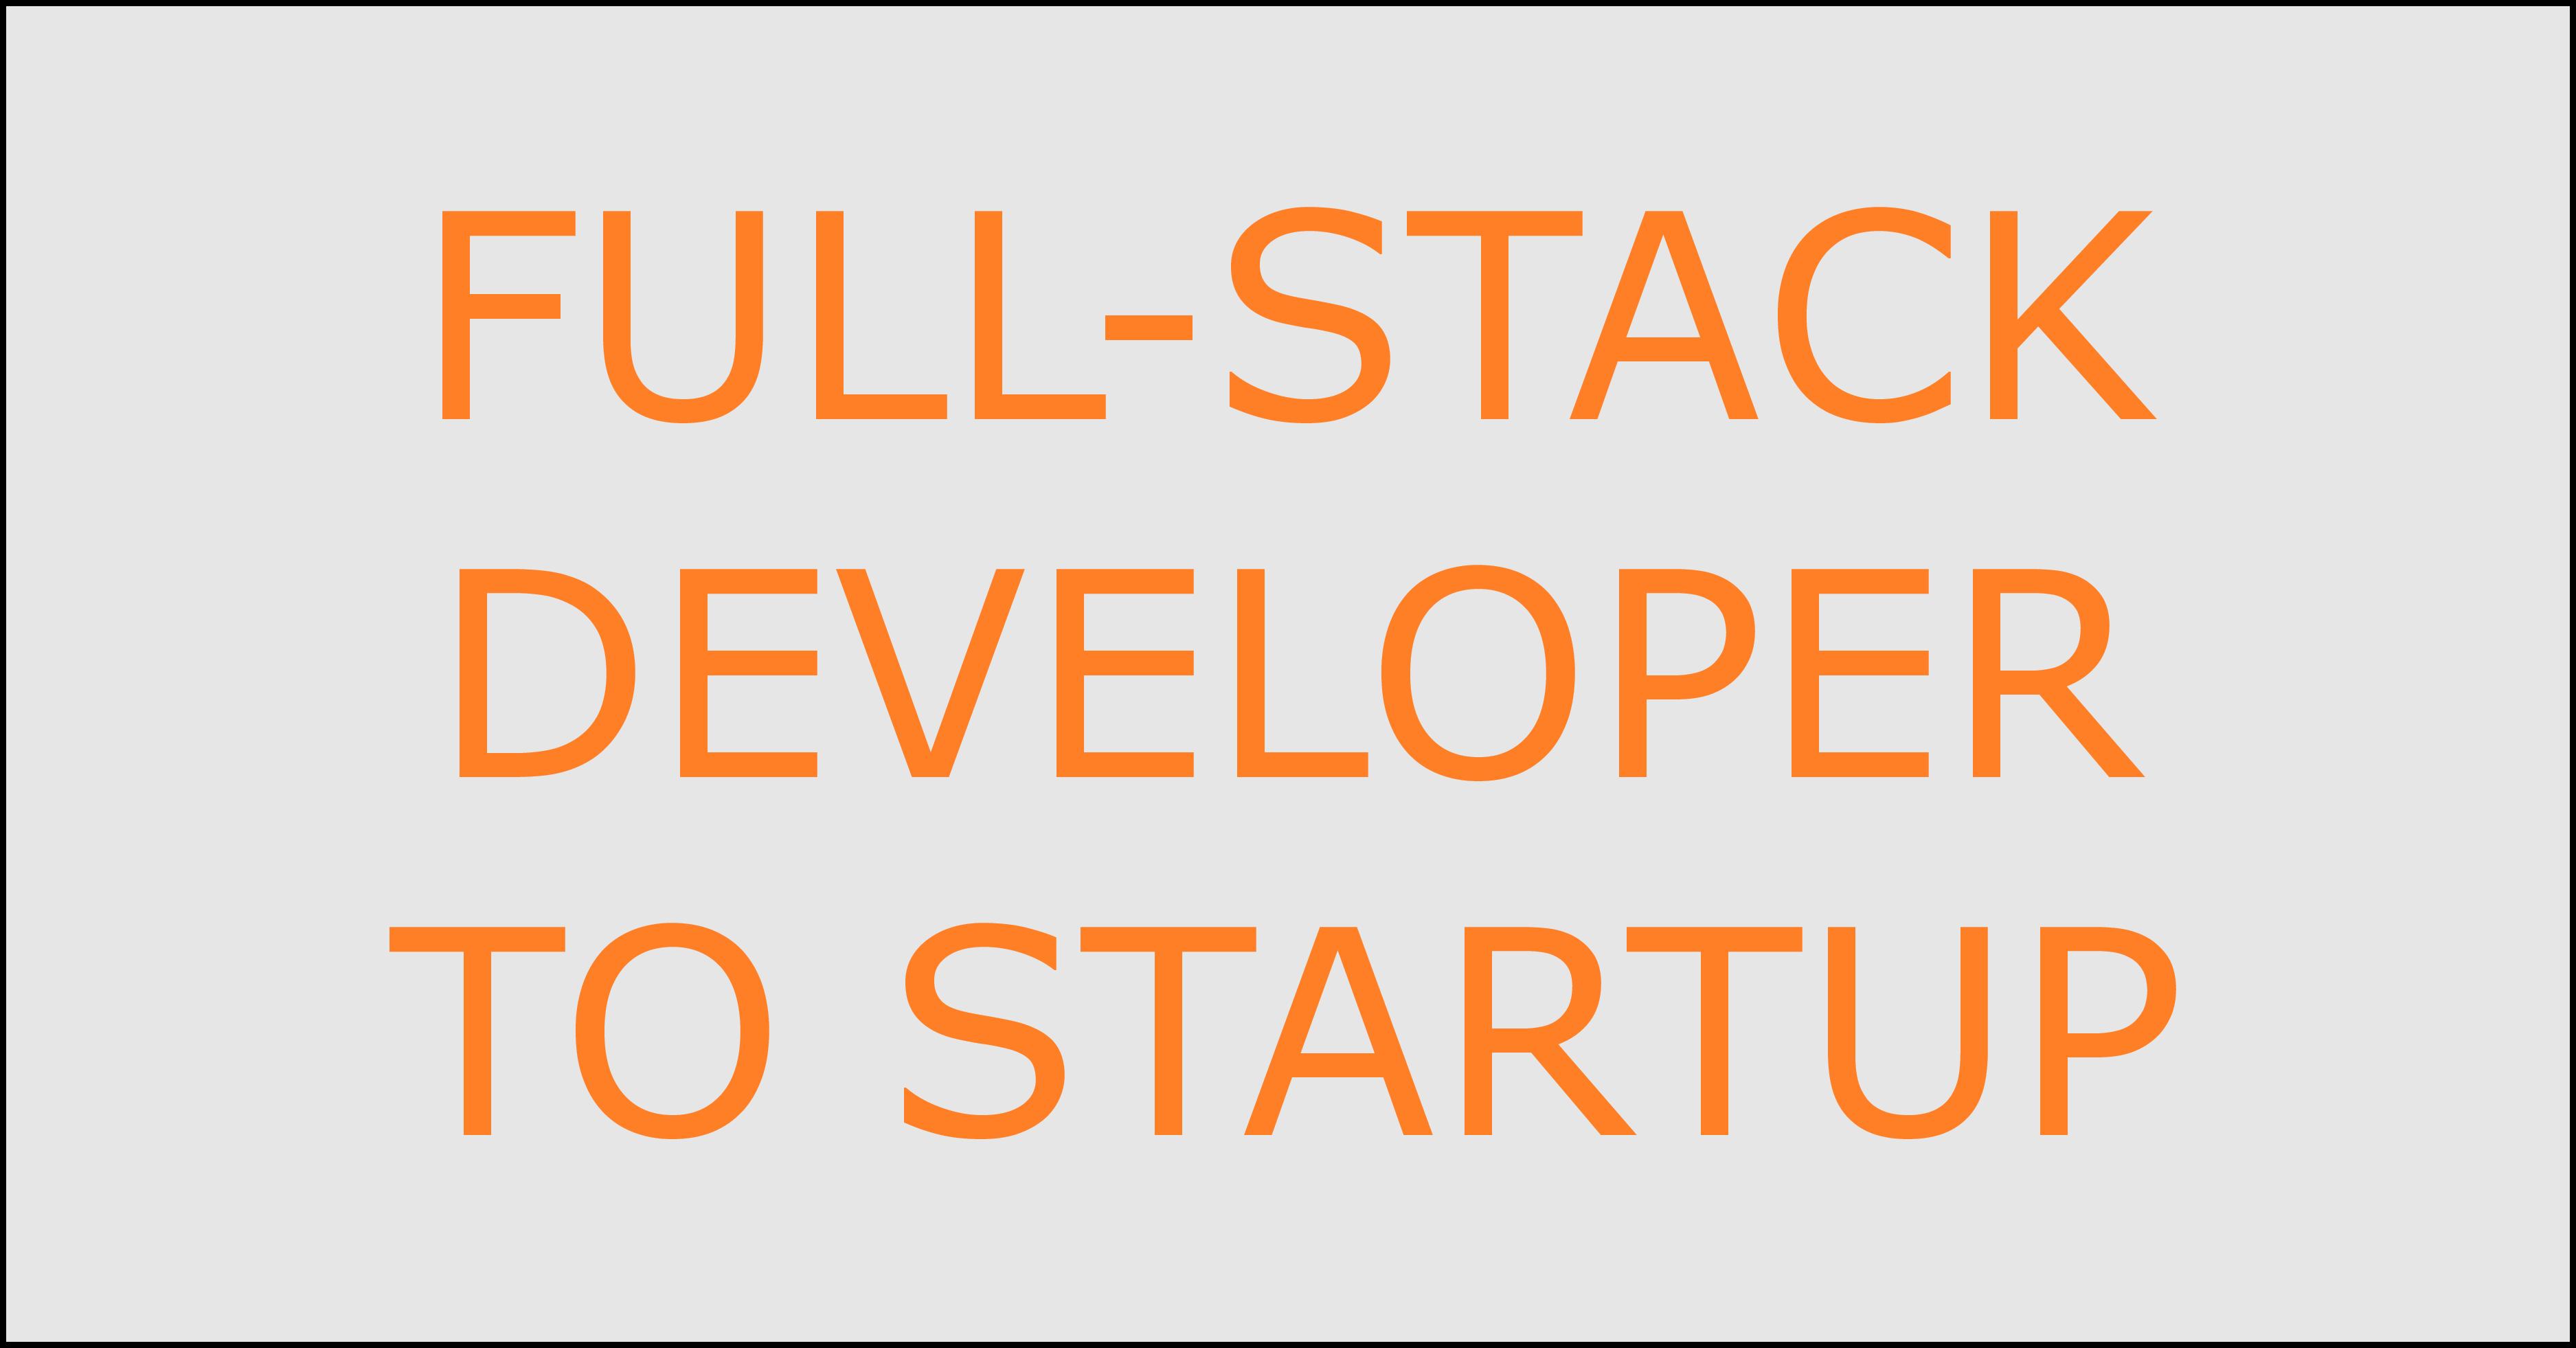 Full stack developer to startup